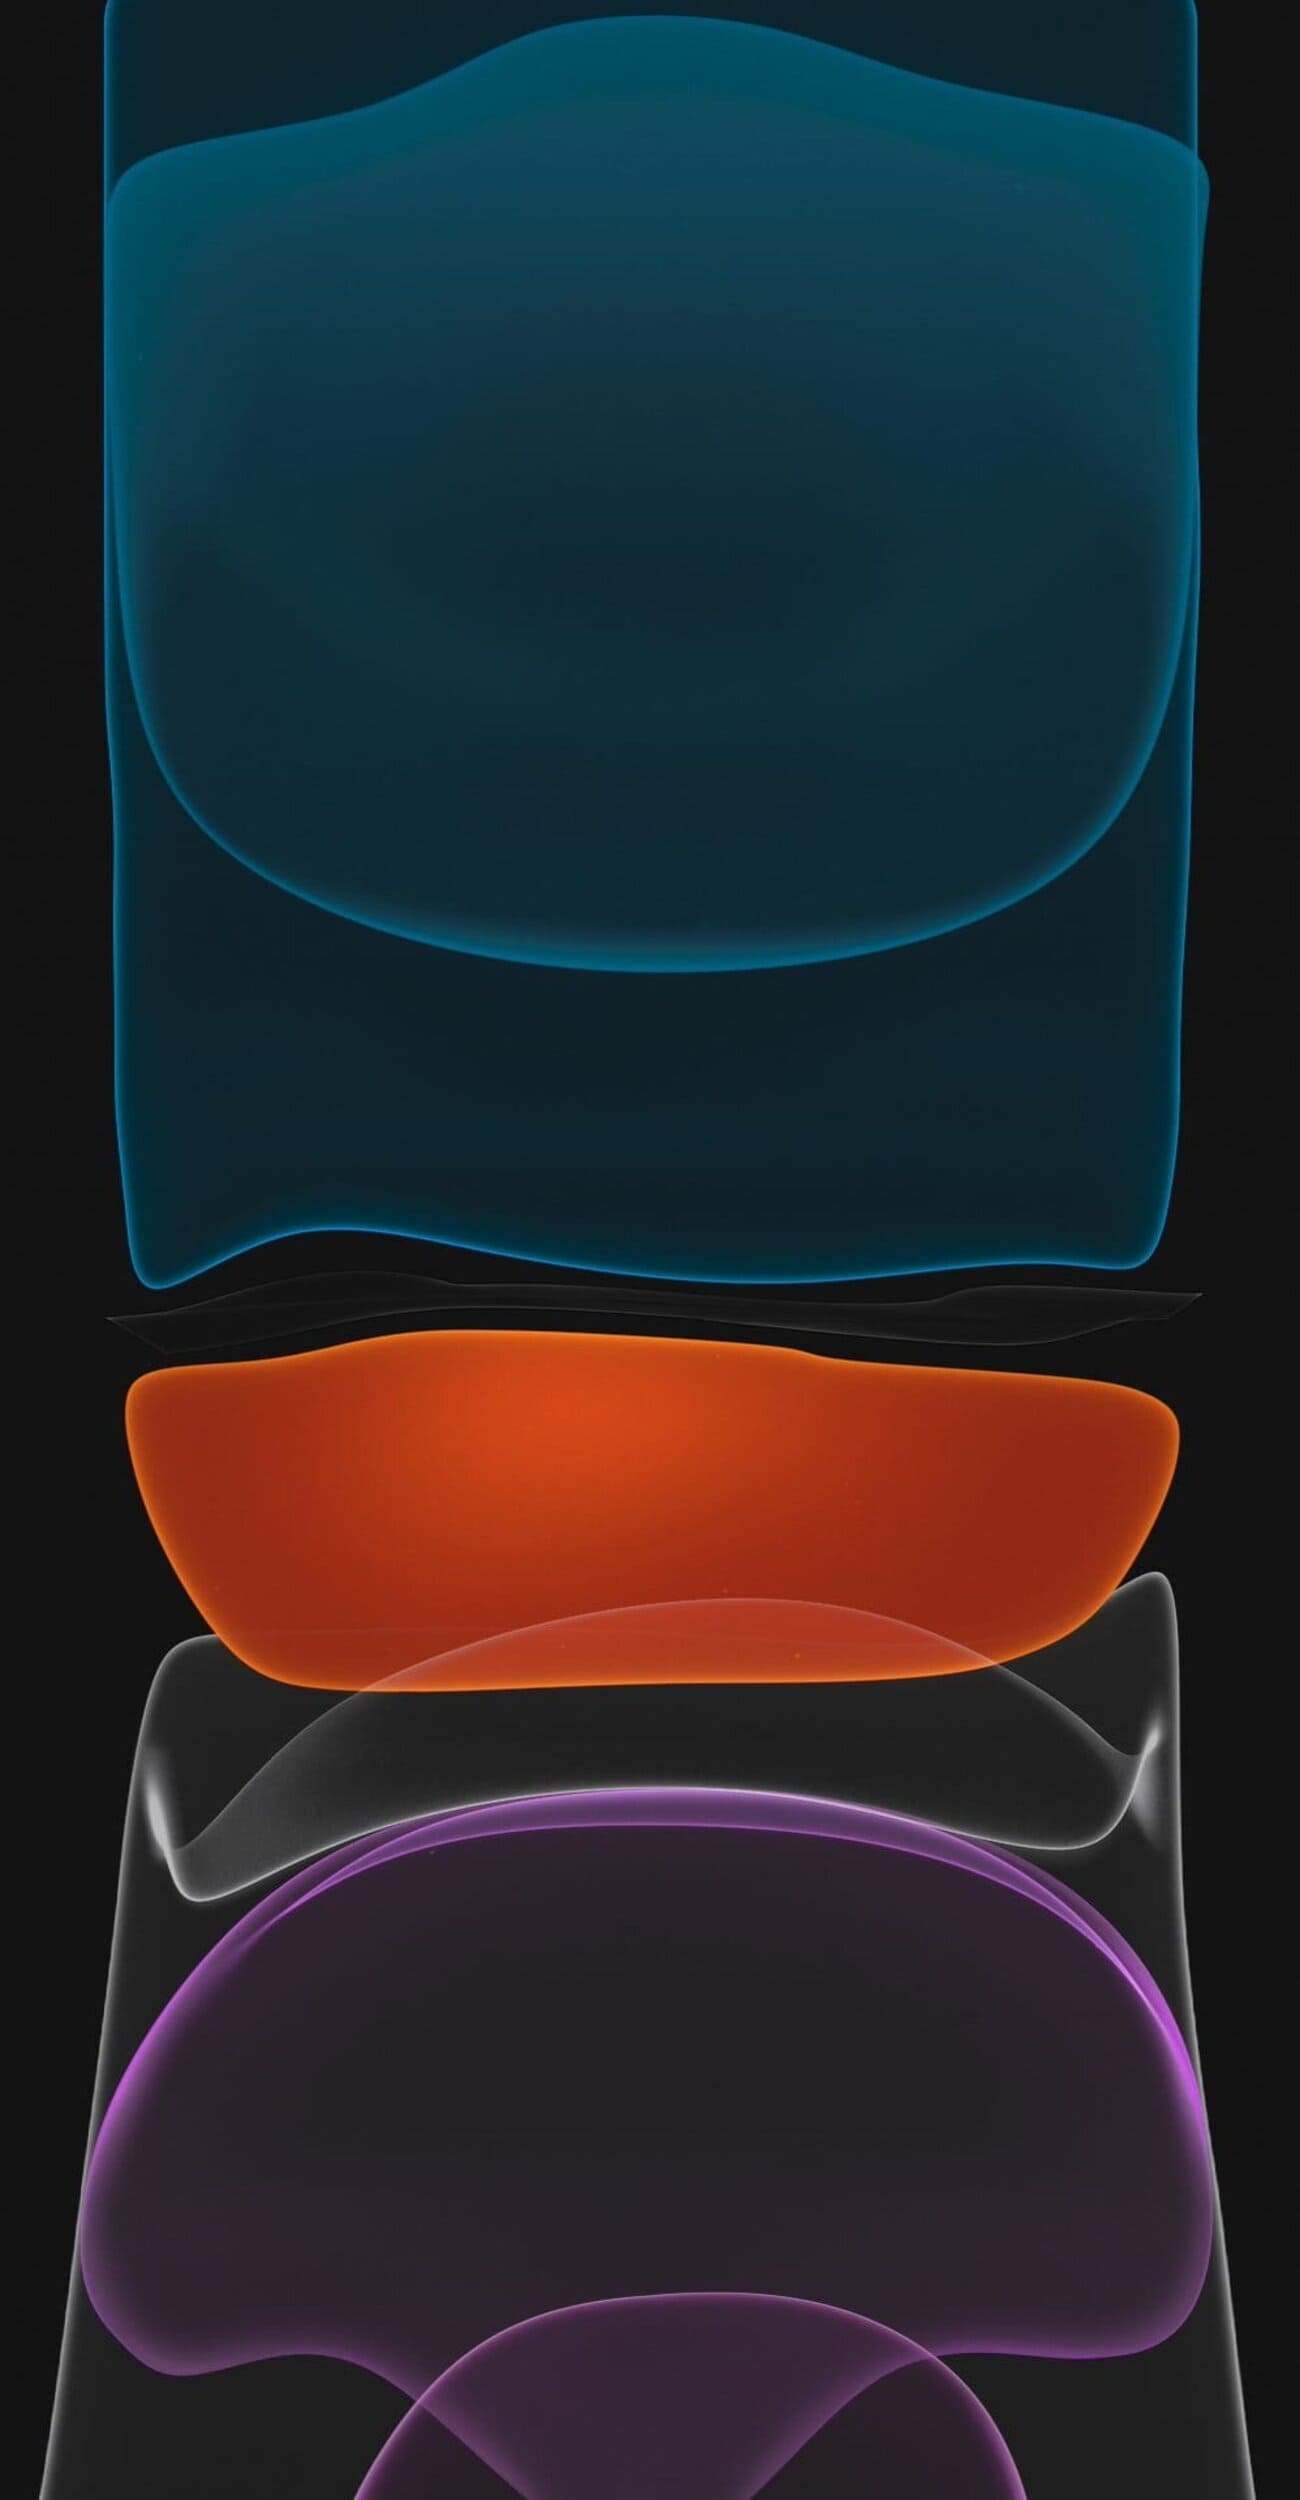 خلفية من خلفيات ايفون 11 اصلية ملونة مع خلفية سوداء بدقة HD